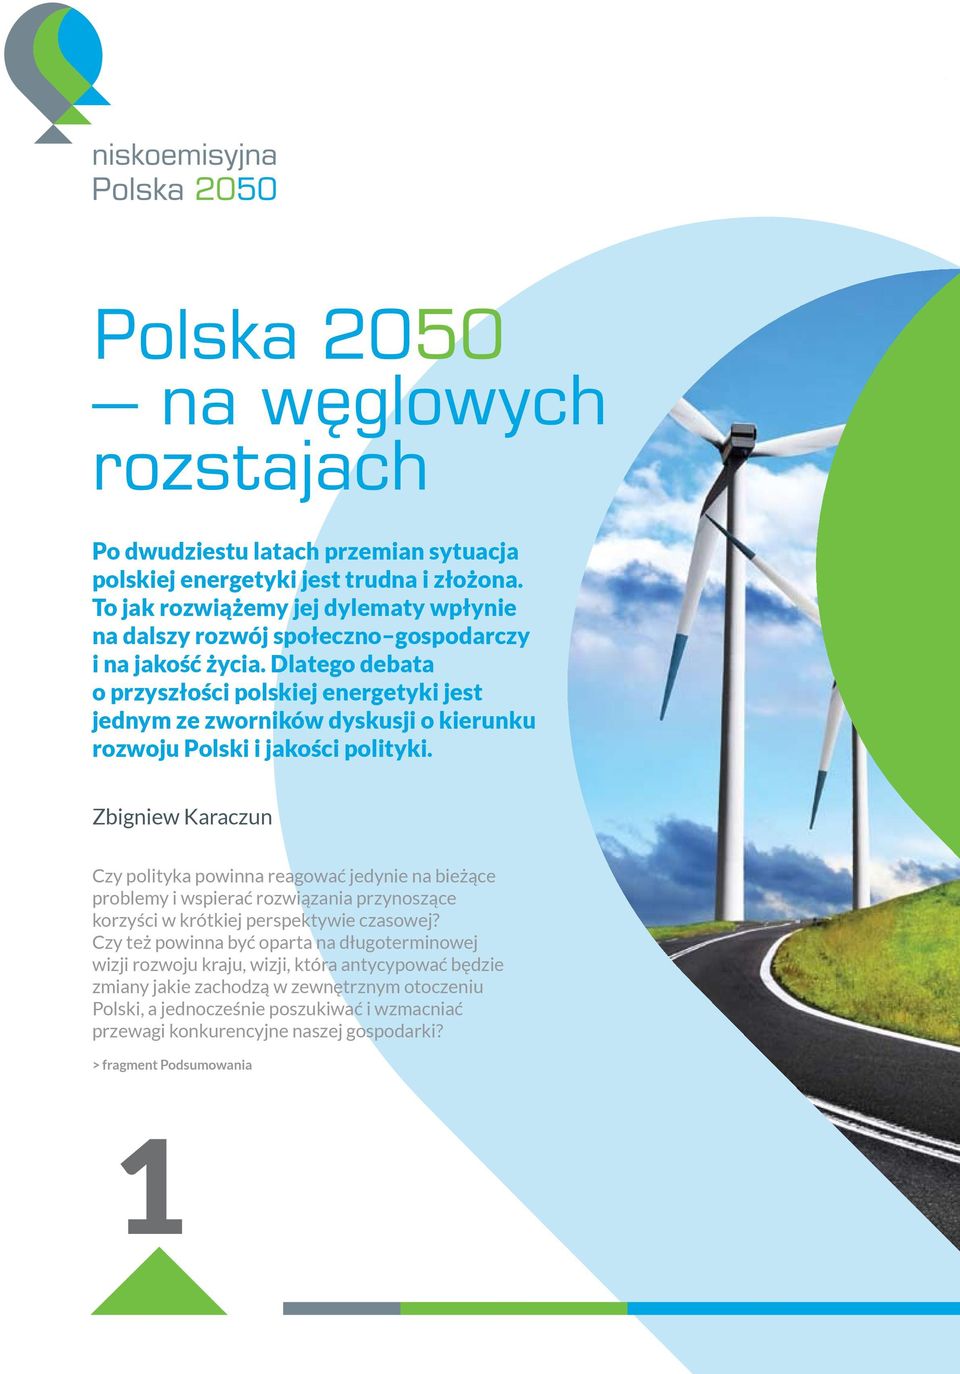 Dlatego debata o przyszłości polskiej energetyki jest jednym ze zworników dyskusji o kierunku rozwoju Polski i jakości polityki.